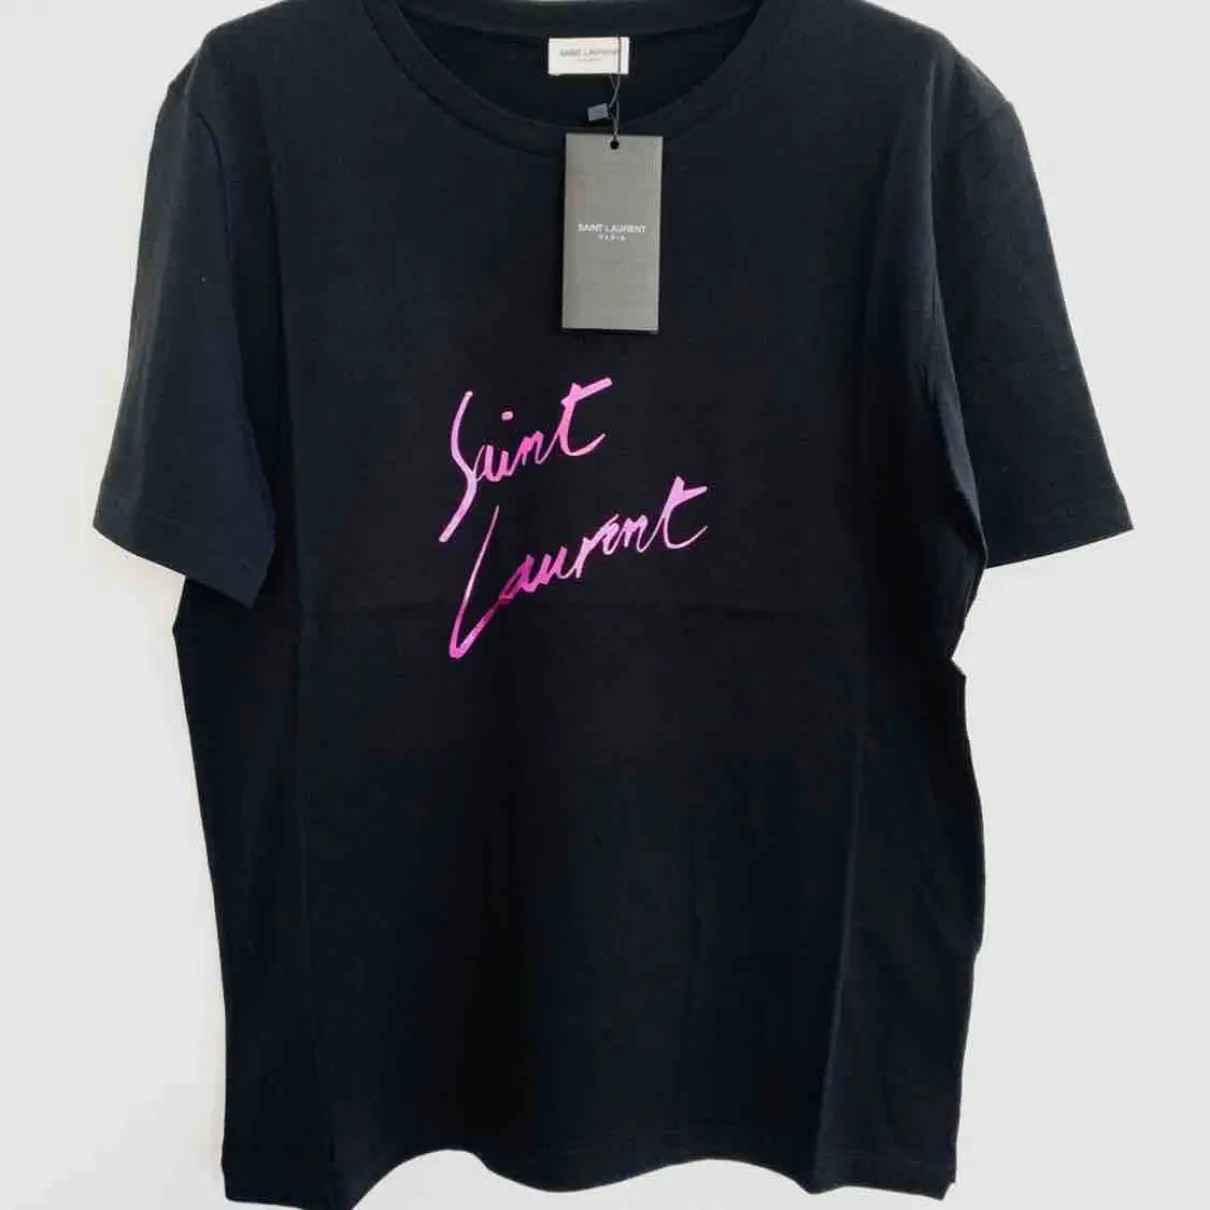 Buy Saint Laurent Black Cotton T-shirt online